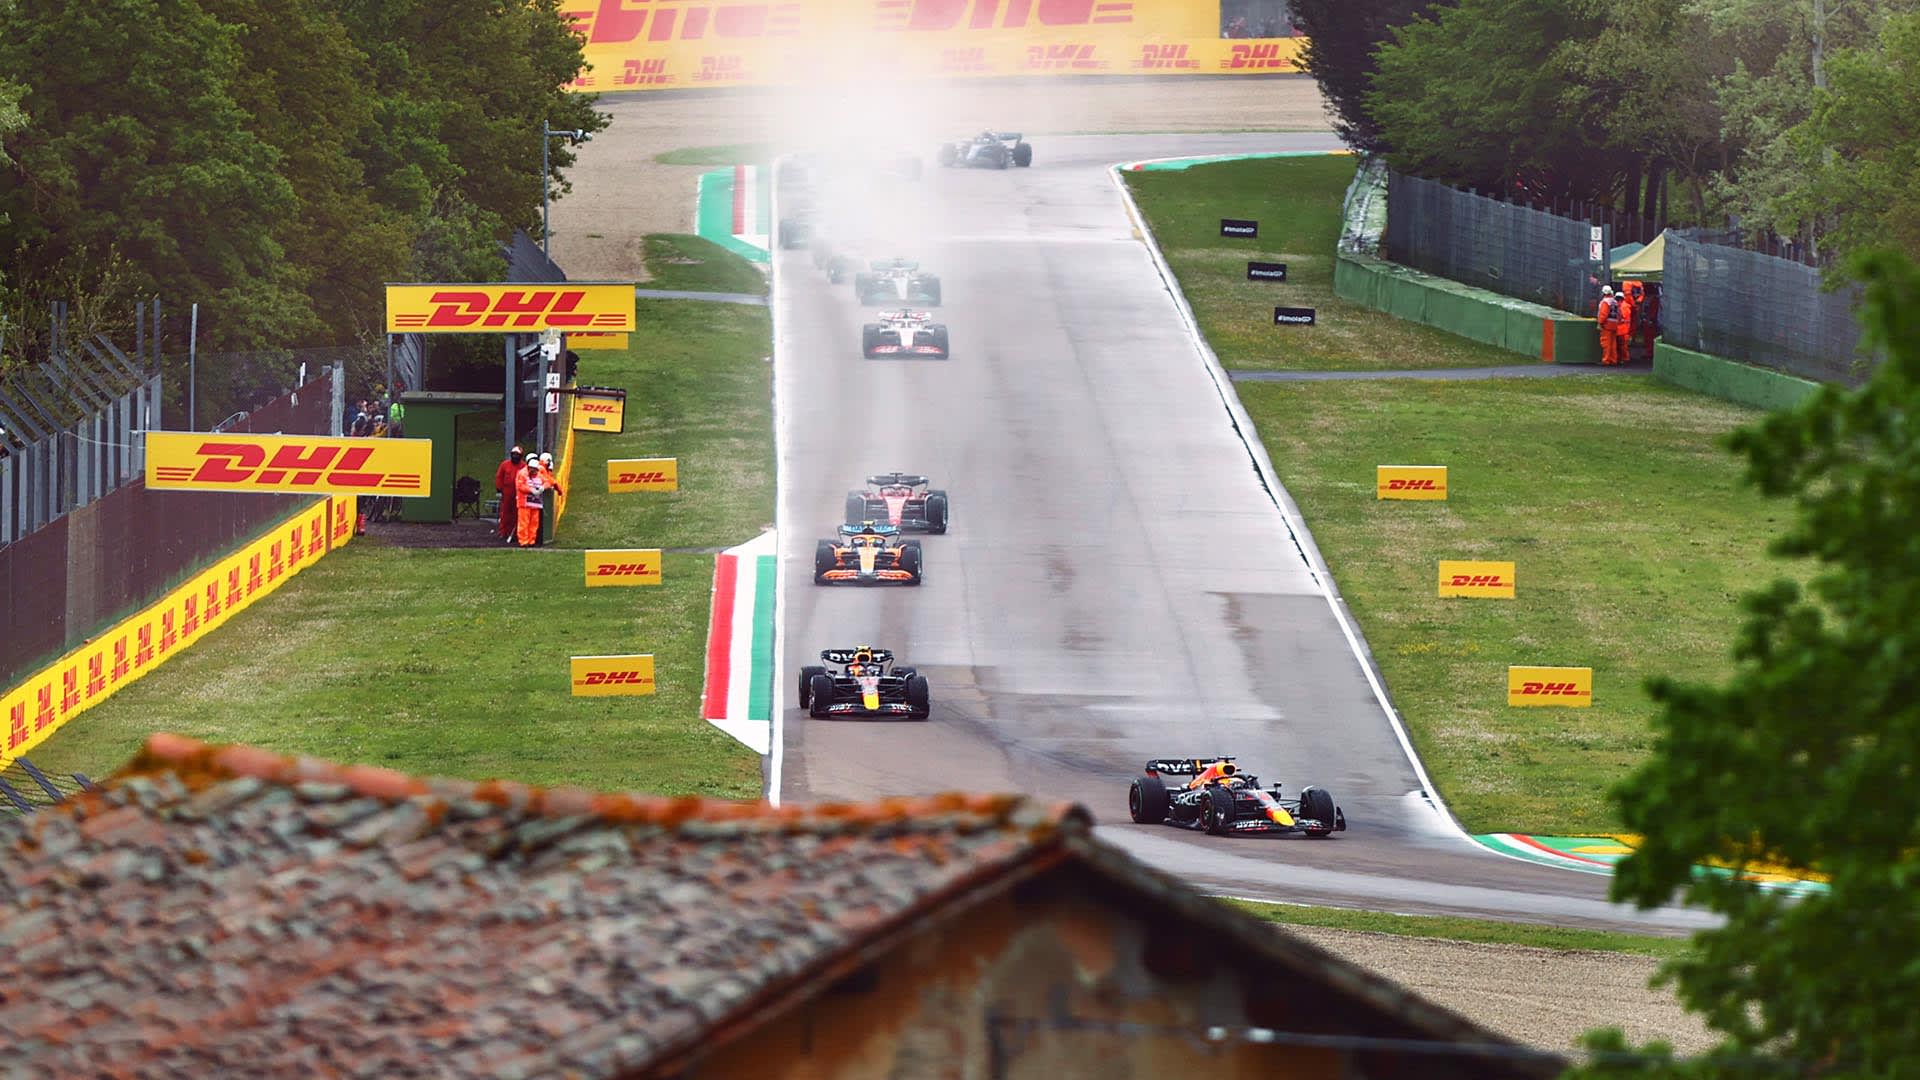 Emilia Romagna Grand Prix 2022